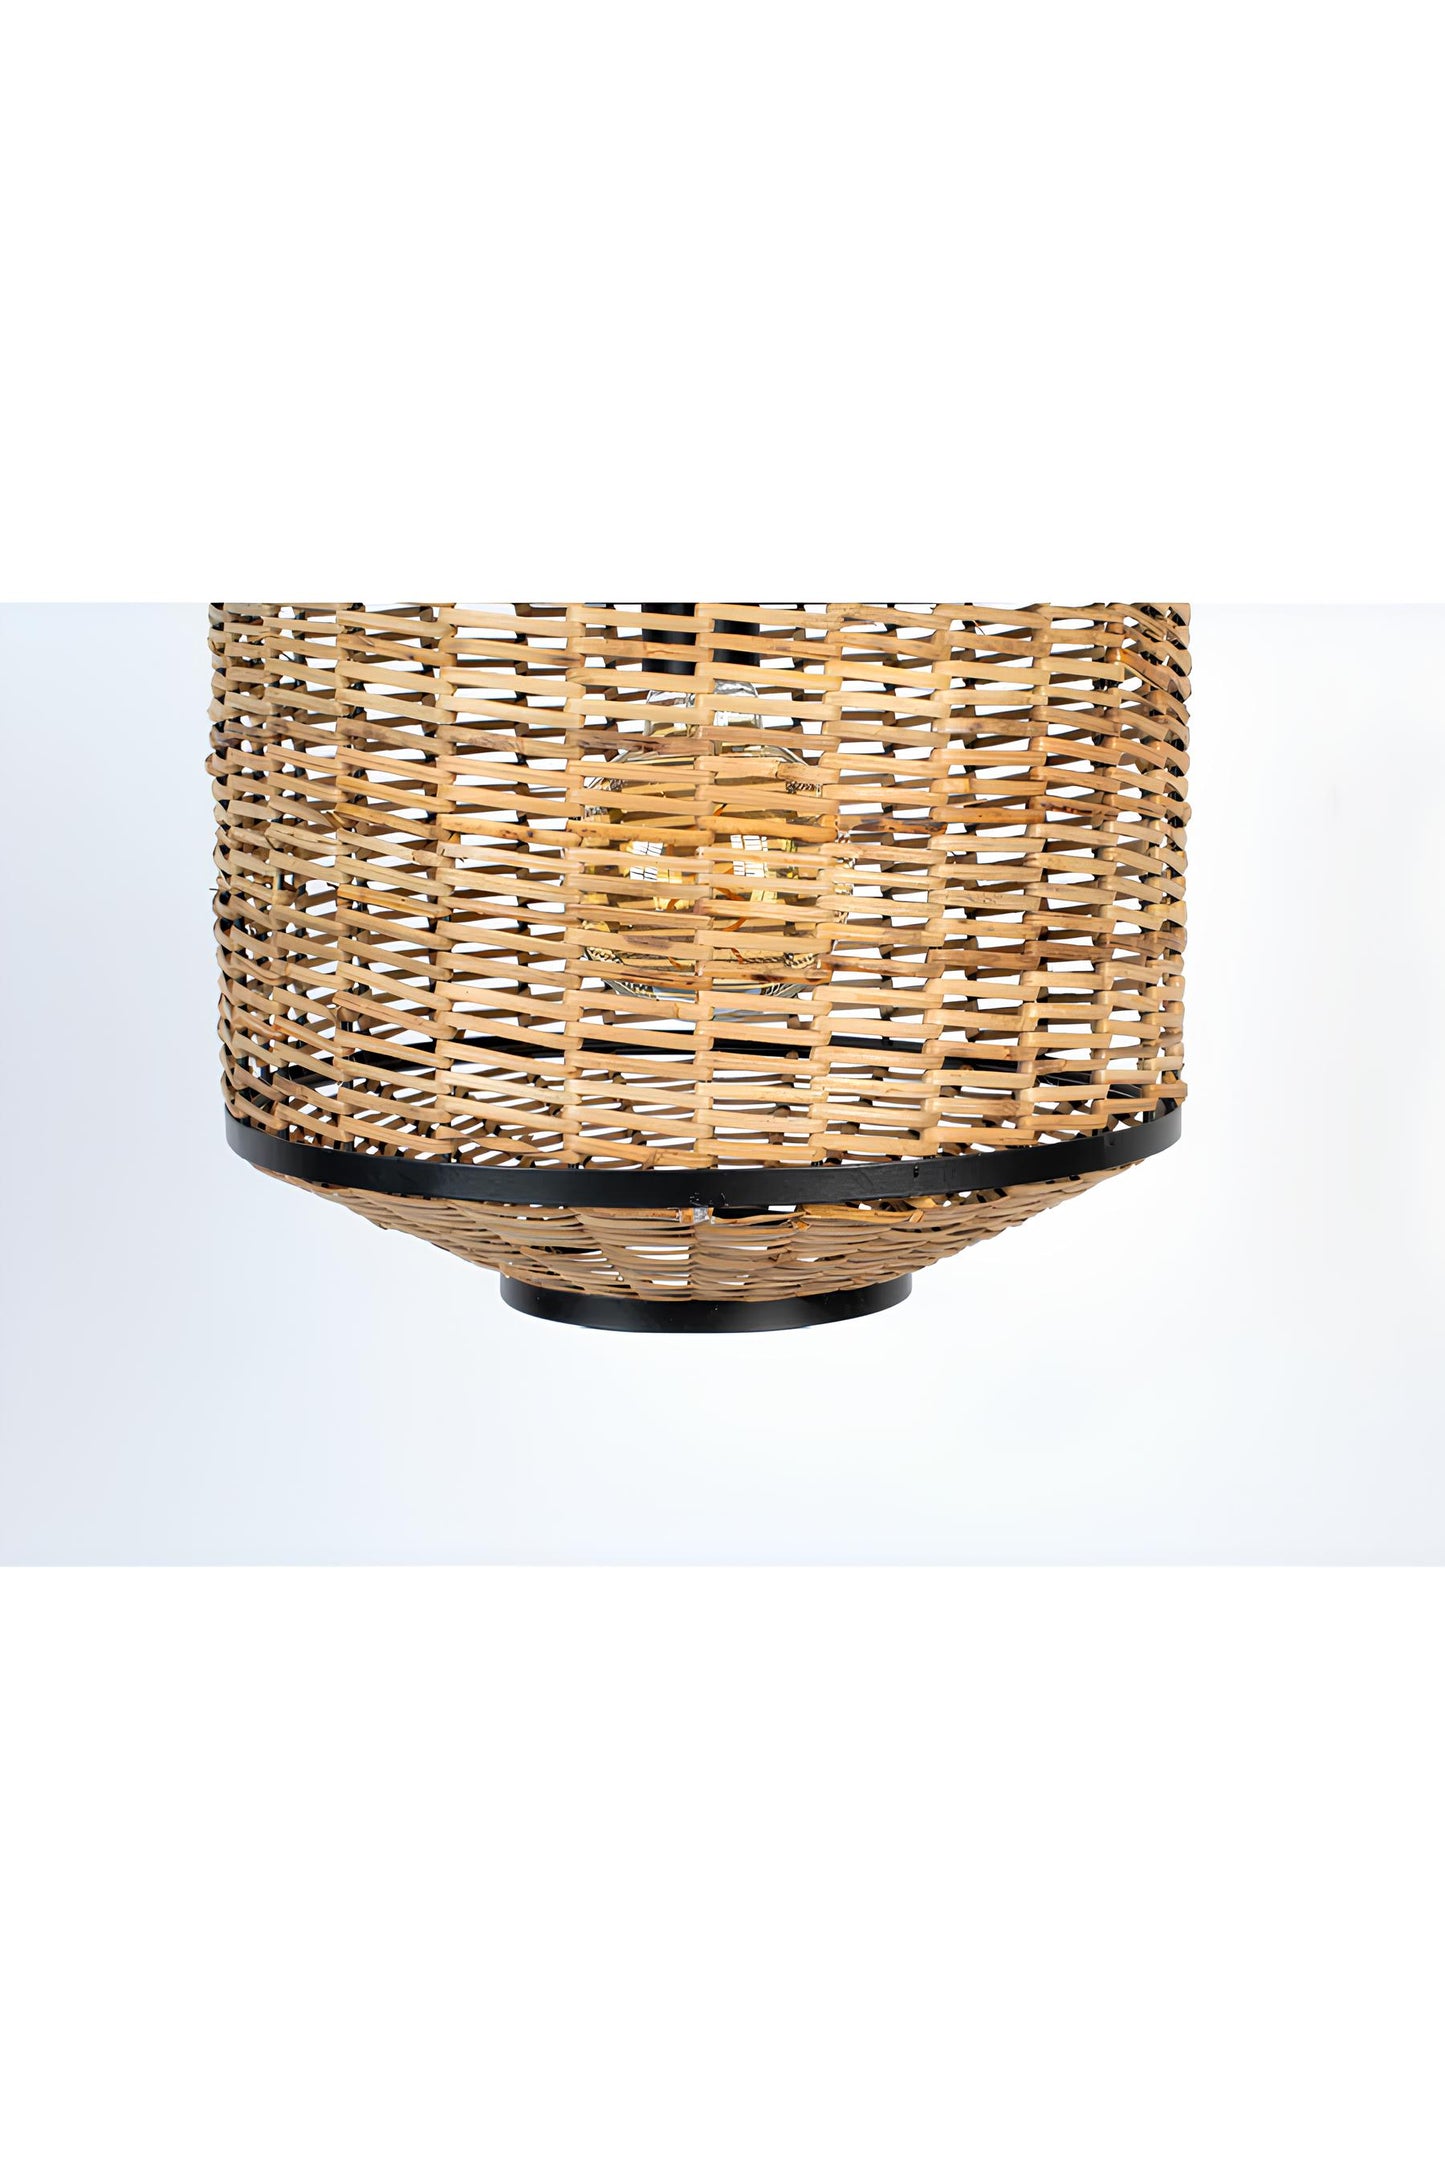 Bamboo Hanging lamp for Living Room | Rattan Pendant light | Cane ceiling light - Taksh - Akway